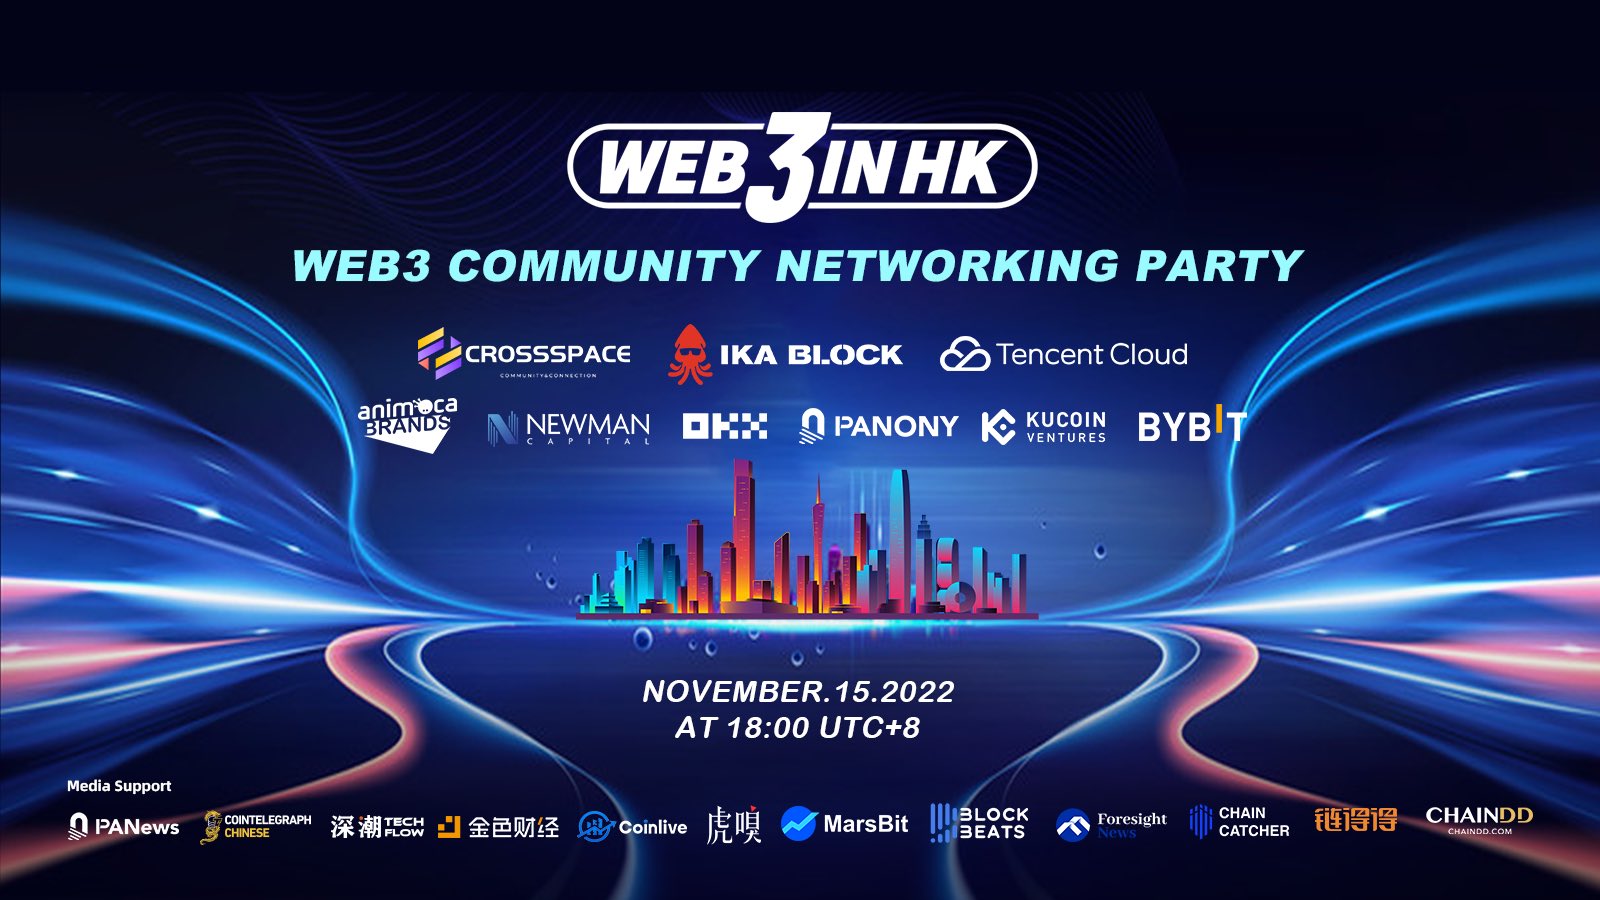 #Web3inHK 首次VIP酒会将于11月15日举办